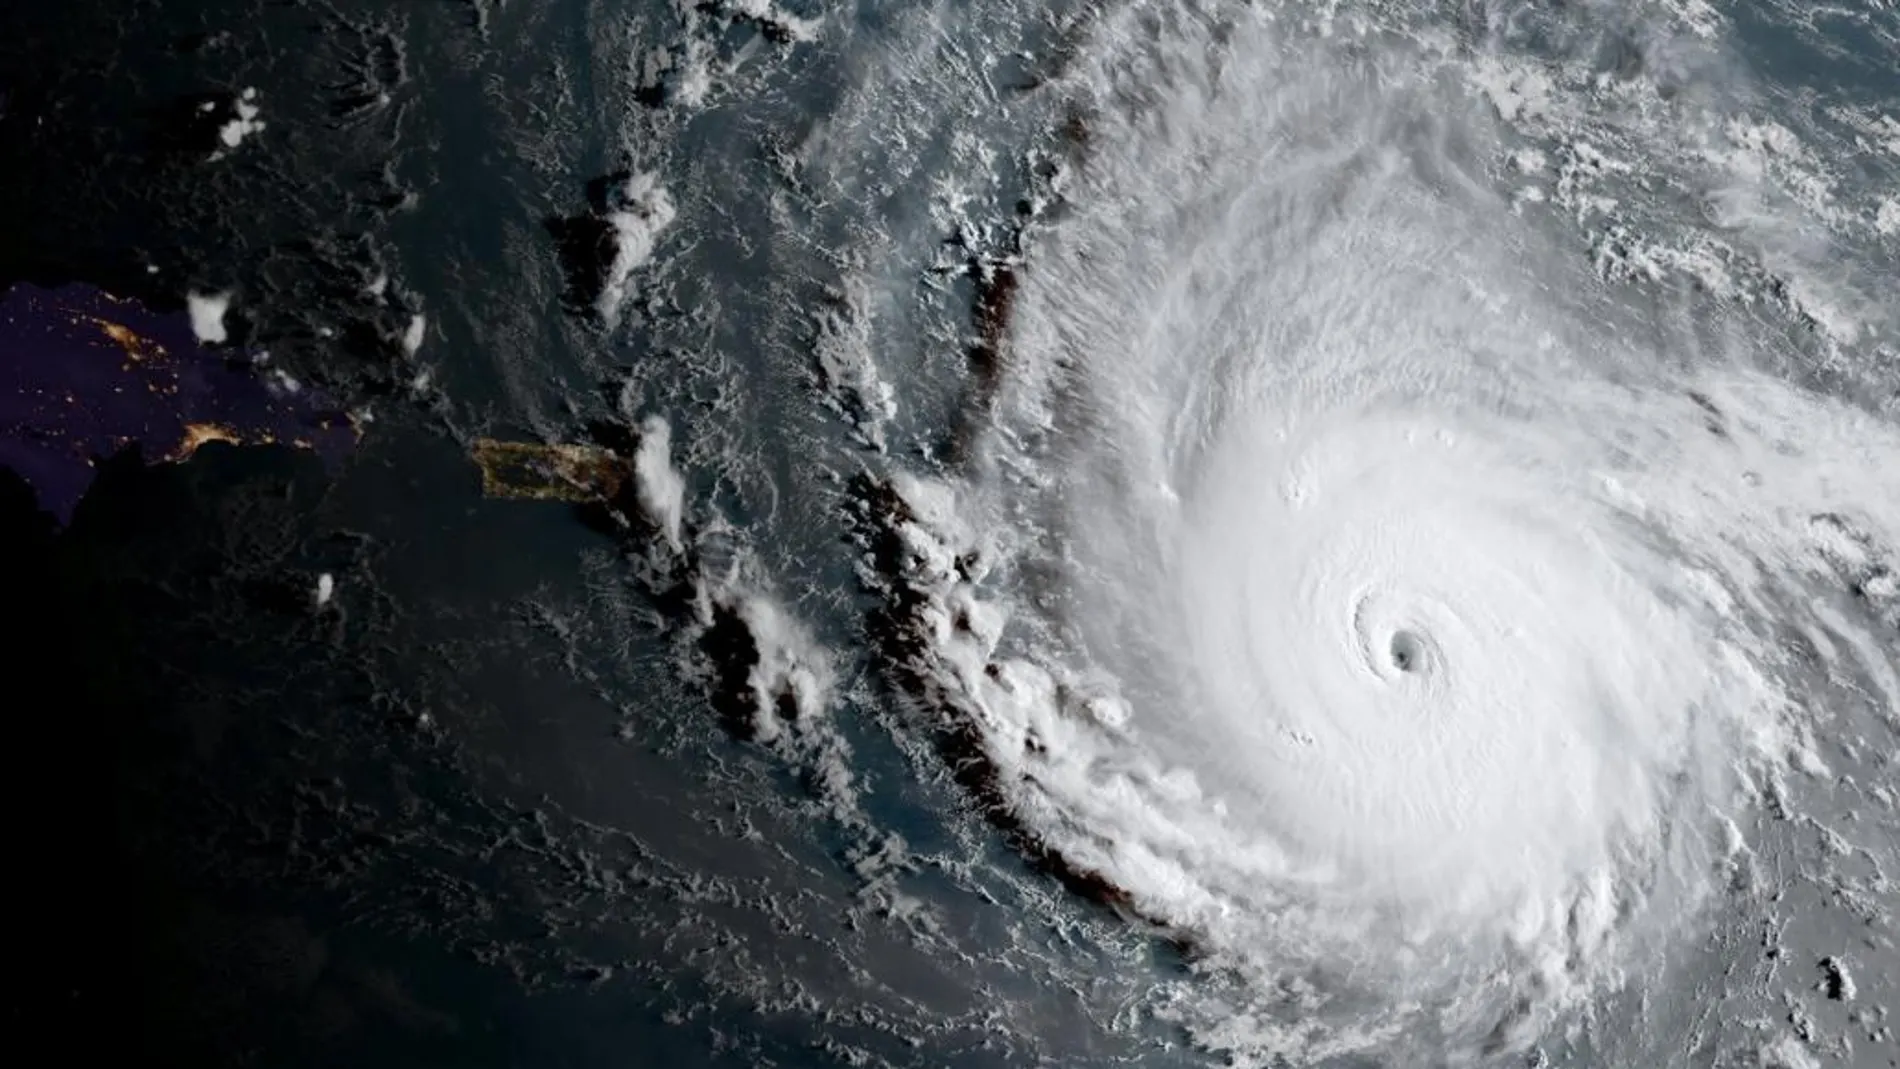 Fotografía tomada desde el espacio tomada por el satélite GOES-16 de la Agencia Nacional de Océanos y Atmósfera de Estados Unidos (NOAA) que muestra el huracán Irma sobre el Océano Atlántico ayer